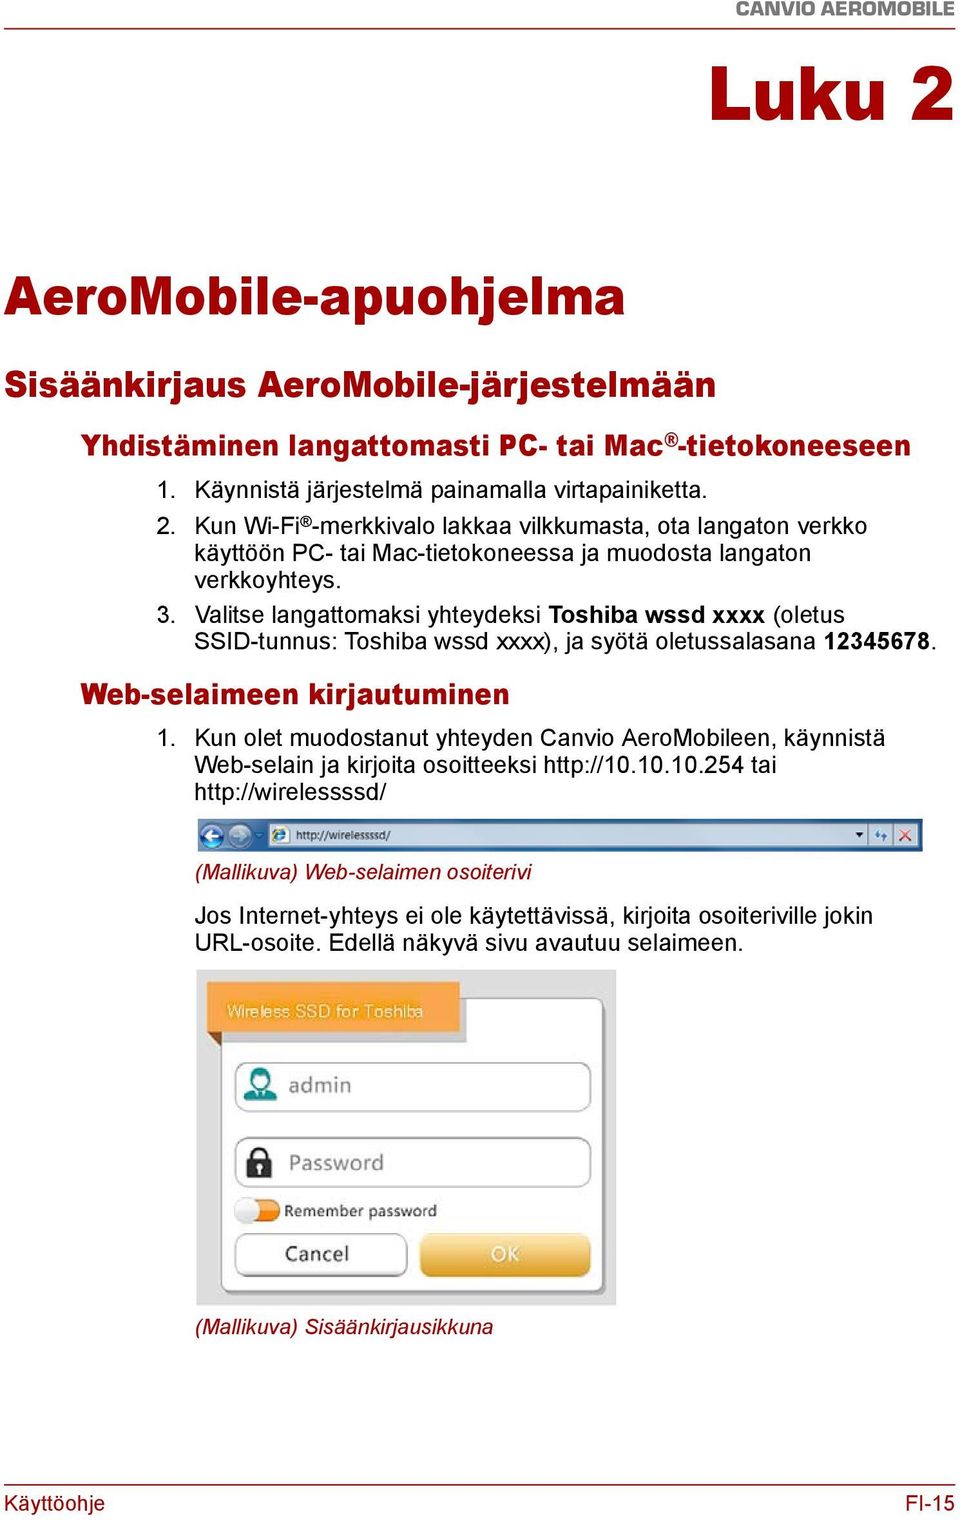 Kun olet muodostanut yhteyden Canvio AeroMobileen, käynnistä Web-selain ja kirjoita osoitteeksi http://10.